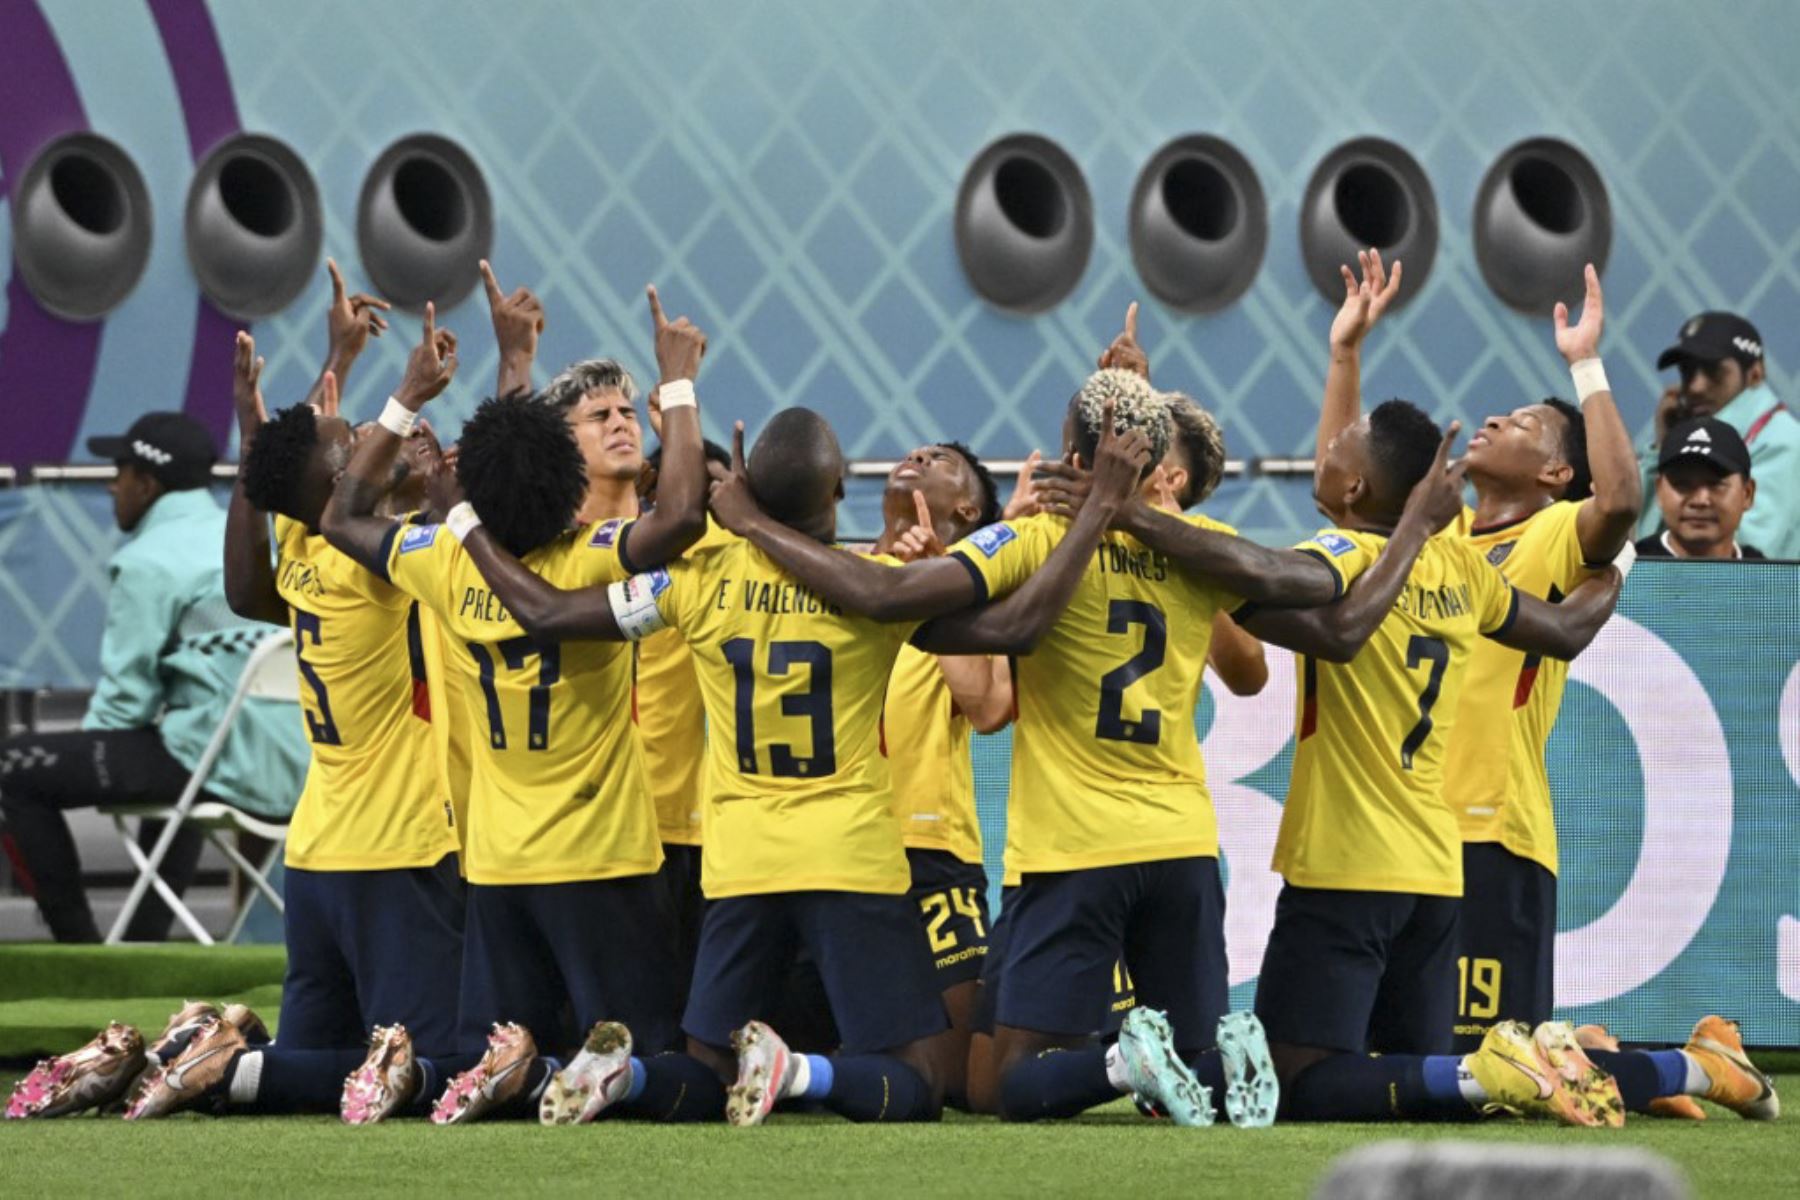 El mediocampista ecuatoriano #23 Moises Caicedo (R) celebra marcar el primer gol de su equipo durante el partido de fútbol del Grupo A de la Copa Mundial Catar 2022 entre Ecuador y Senegal en el Estadio Internacional Khalifa en Doha

Foto: AFP